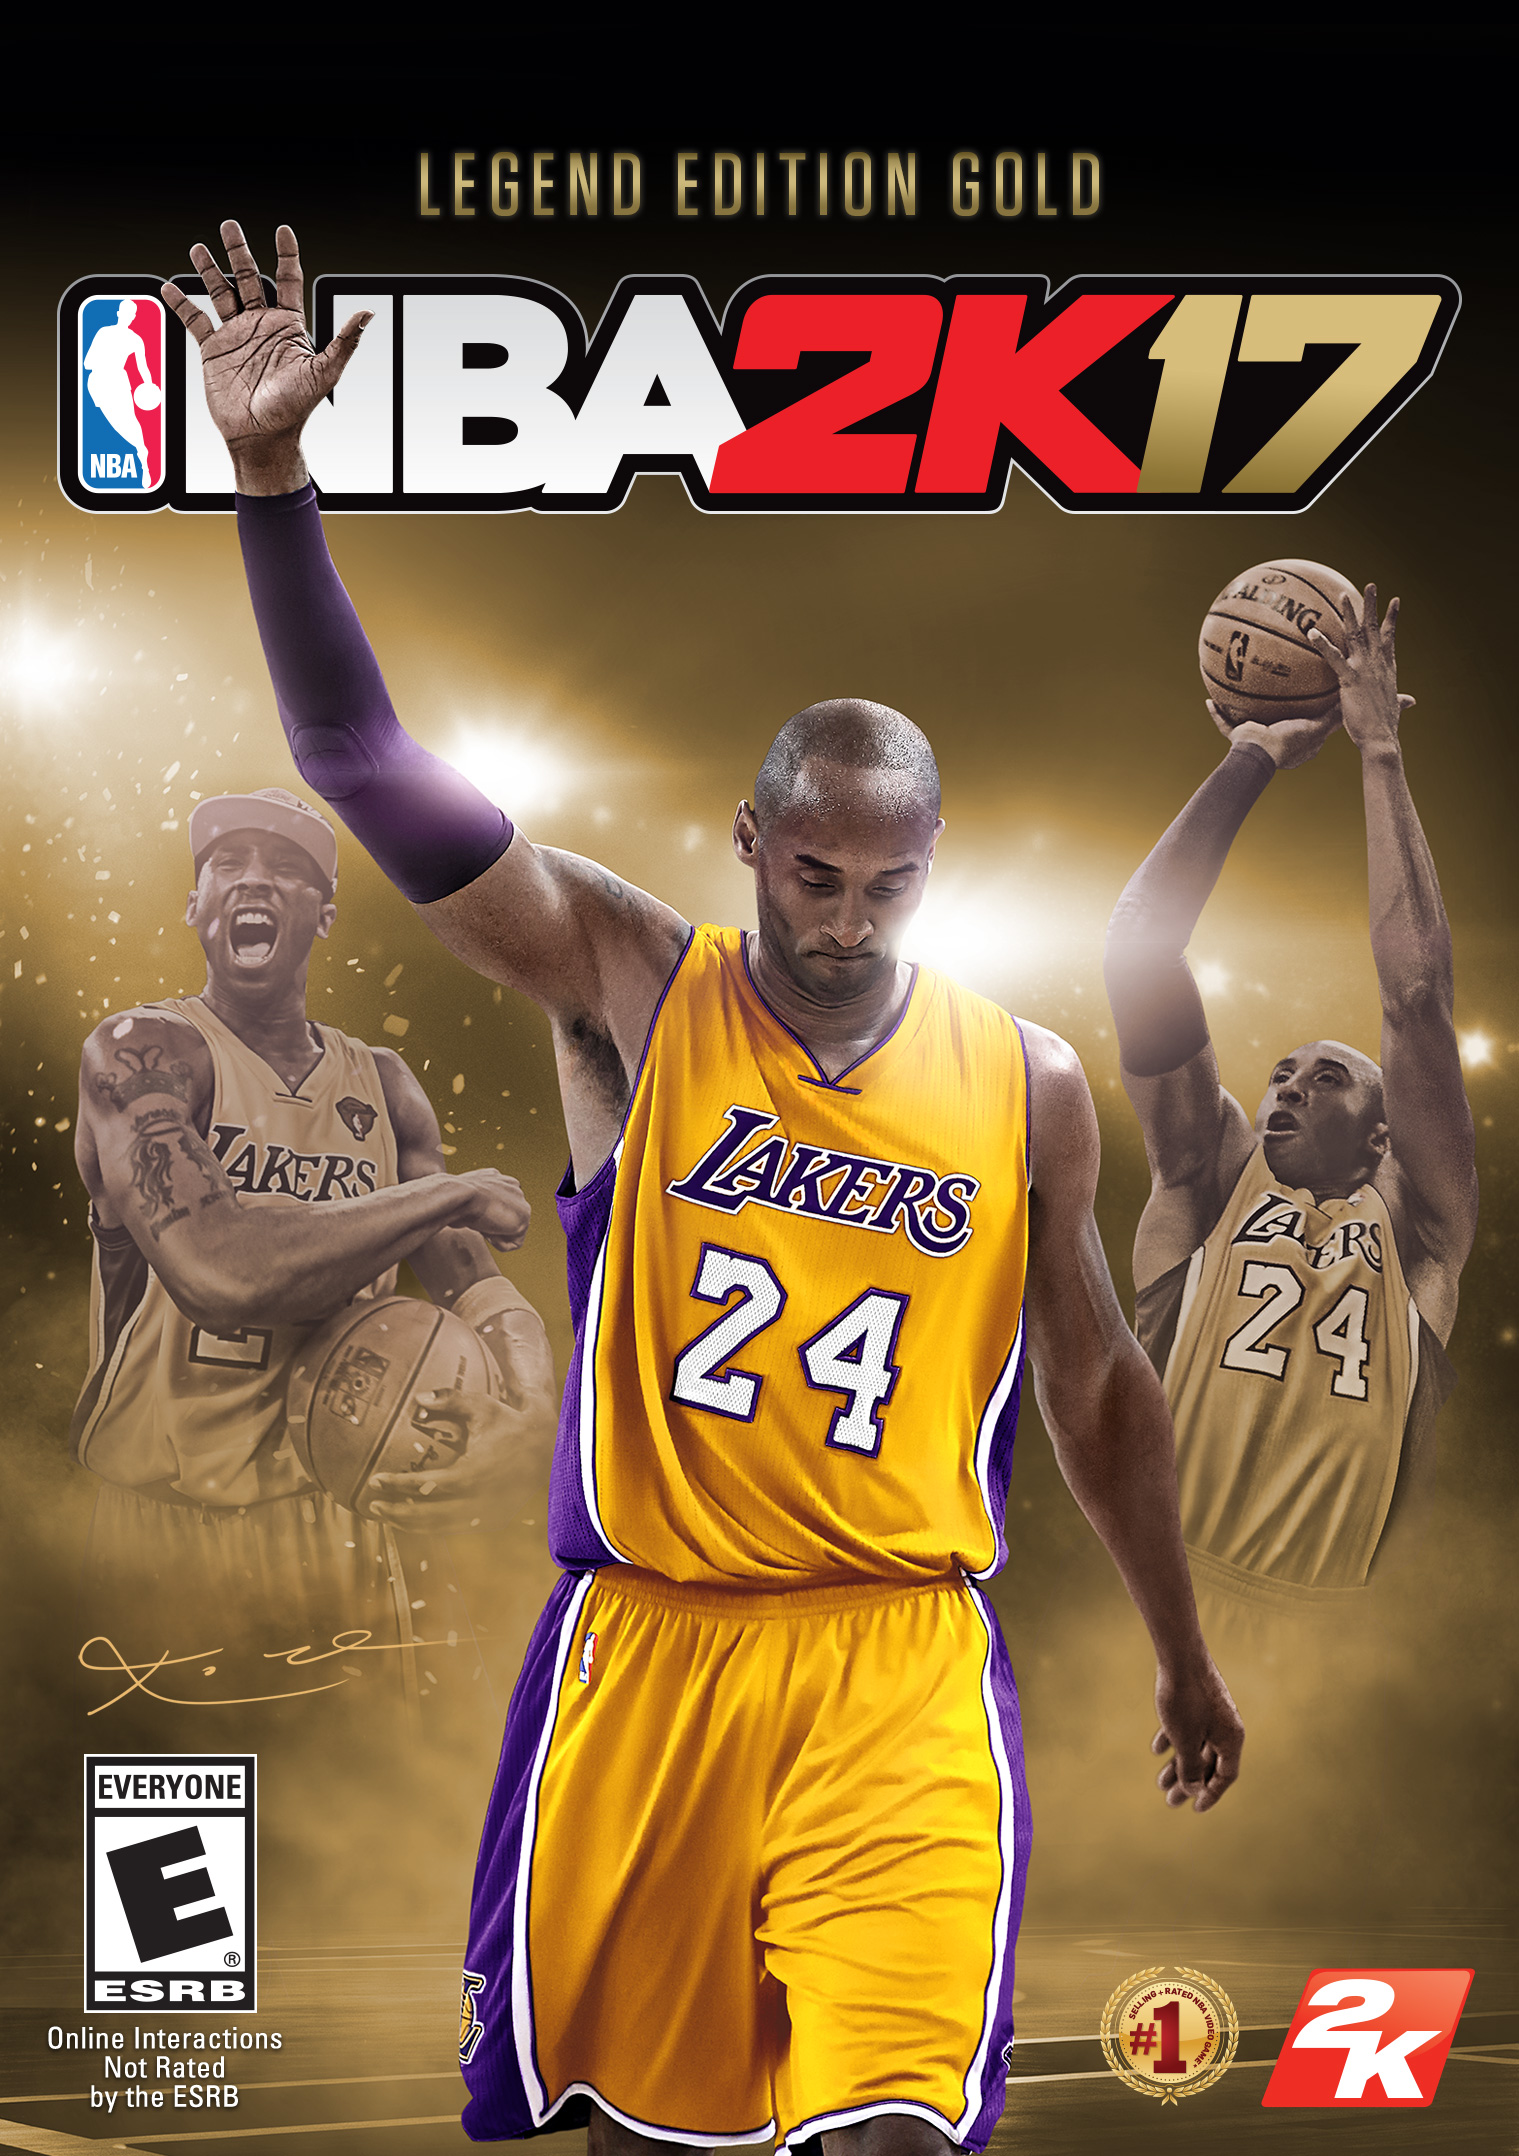 Portada del NBA2k17 Legend Edition | Foto: 2kSports